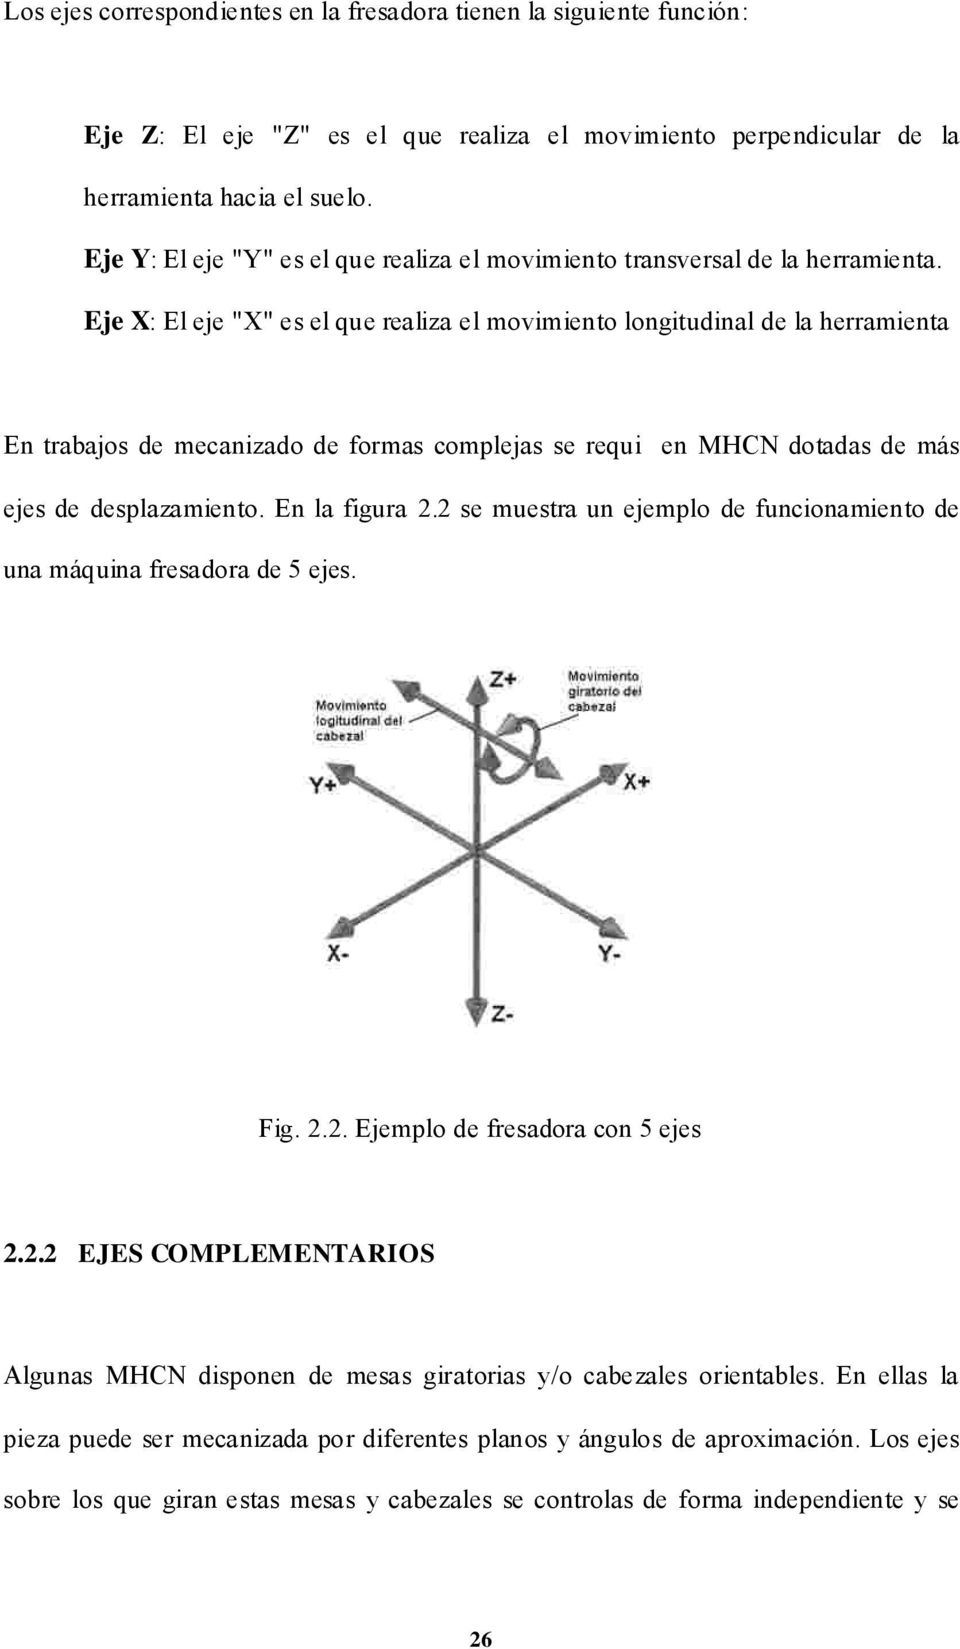 Eje X: El eje "X" es el que realiza el movimiento longitudinal de la herramienta En trabajos de mecanizado de formas complejas se requi en MHCN dotadas de más ejes de desplazamiento. En la figura 2.